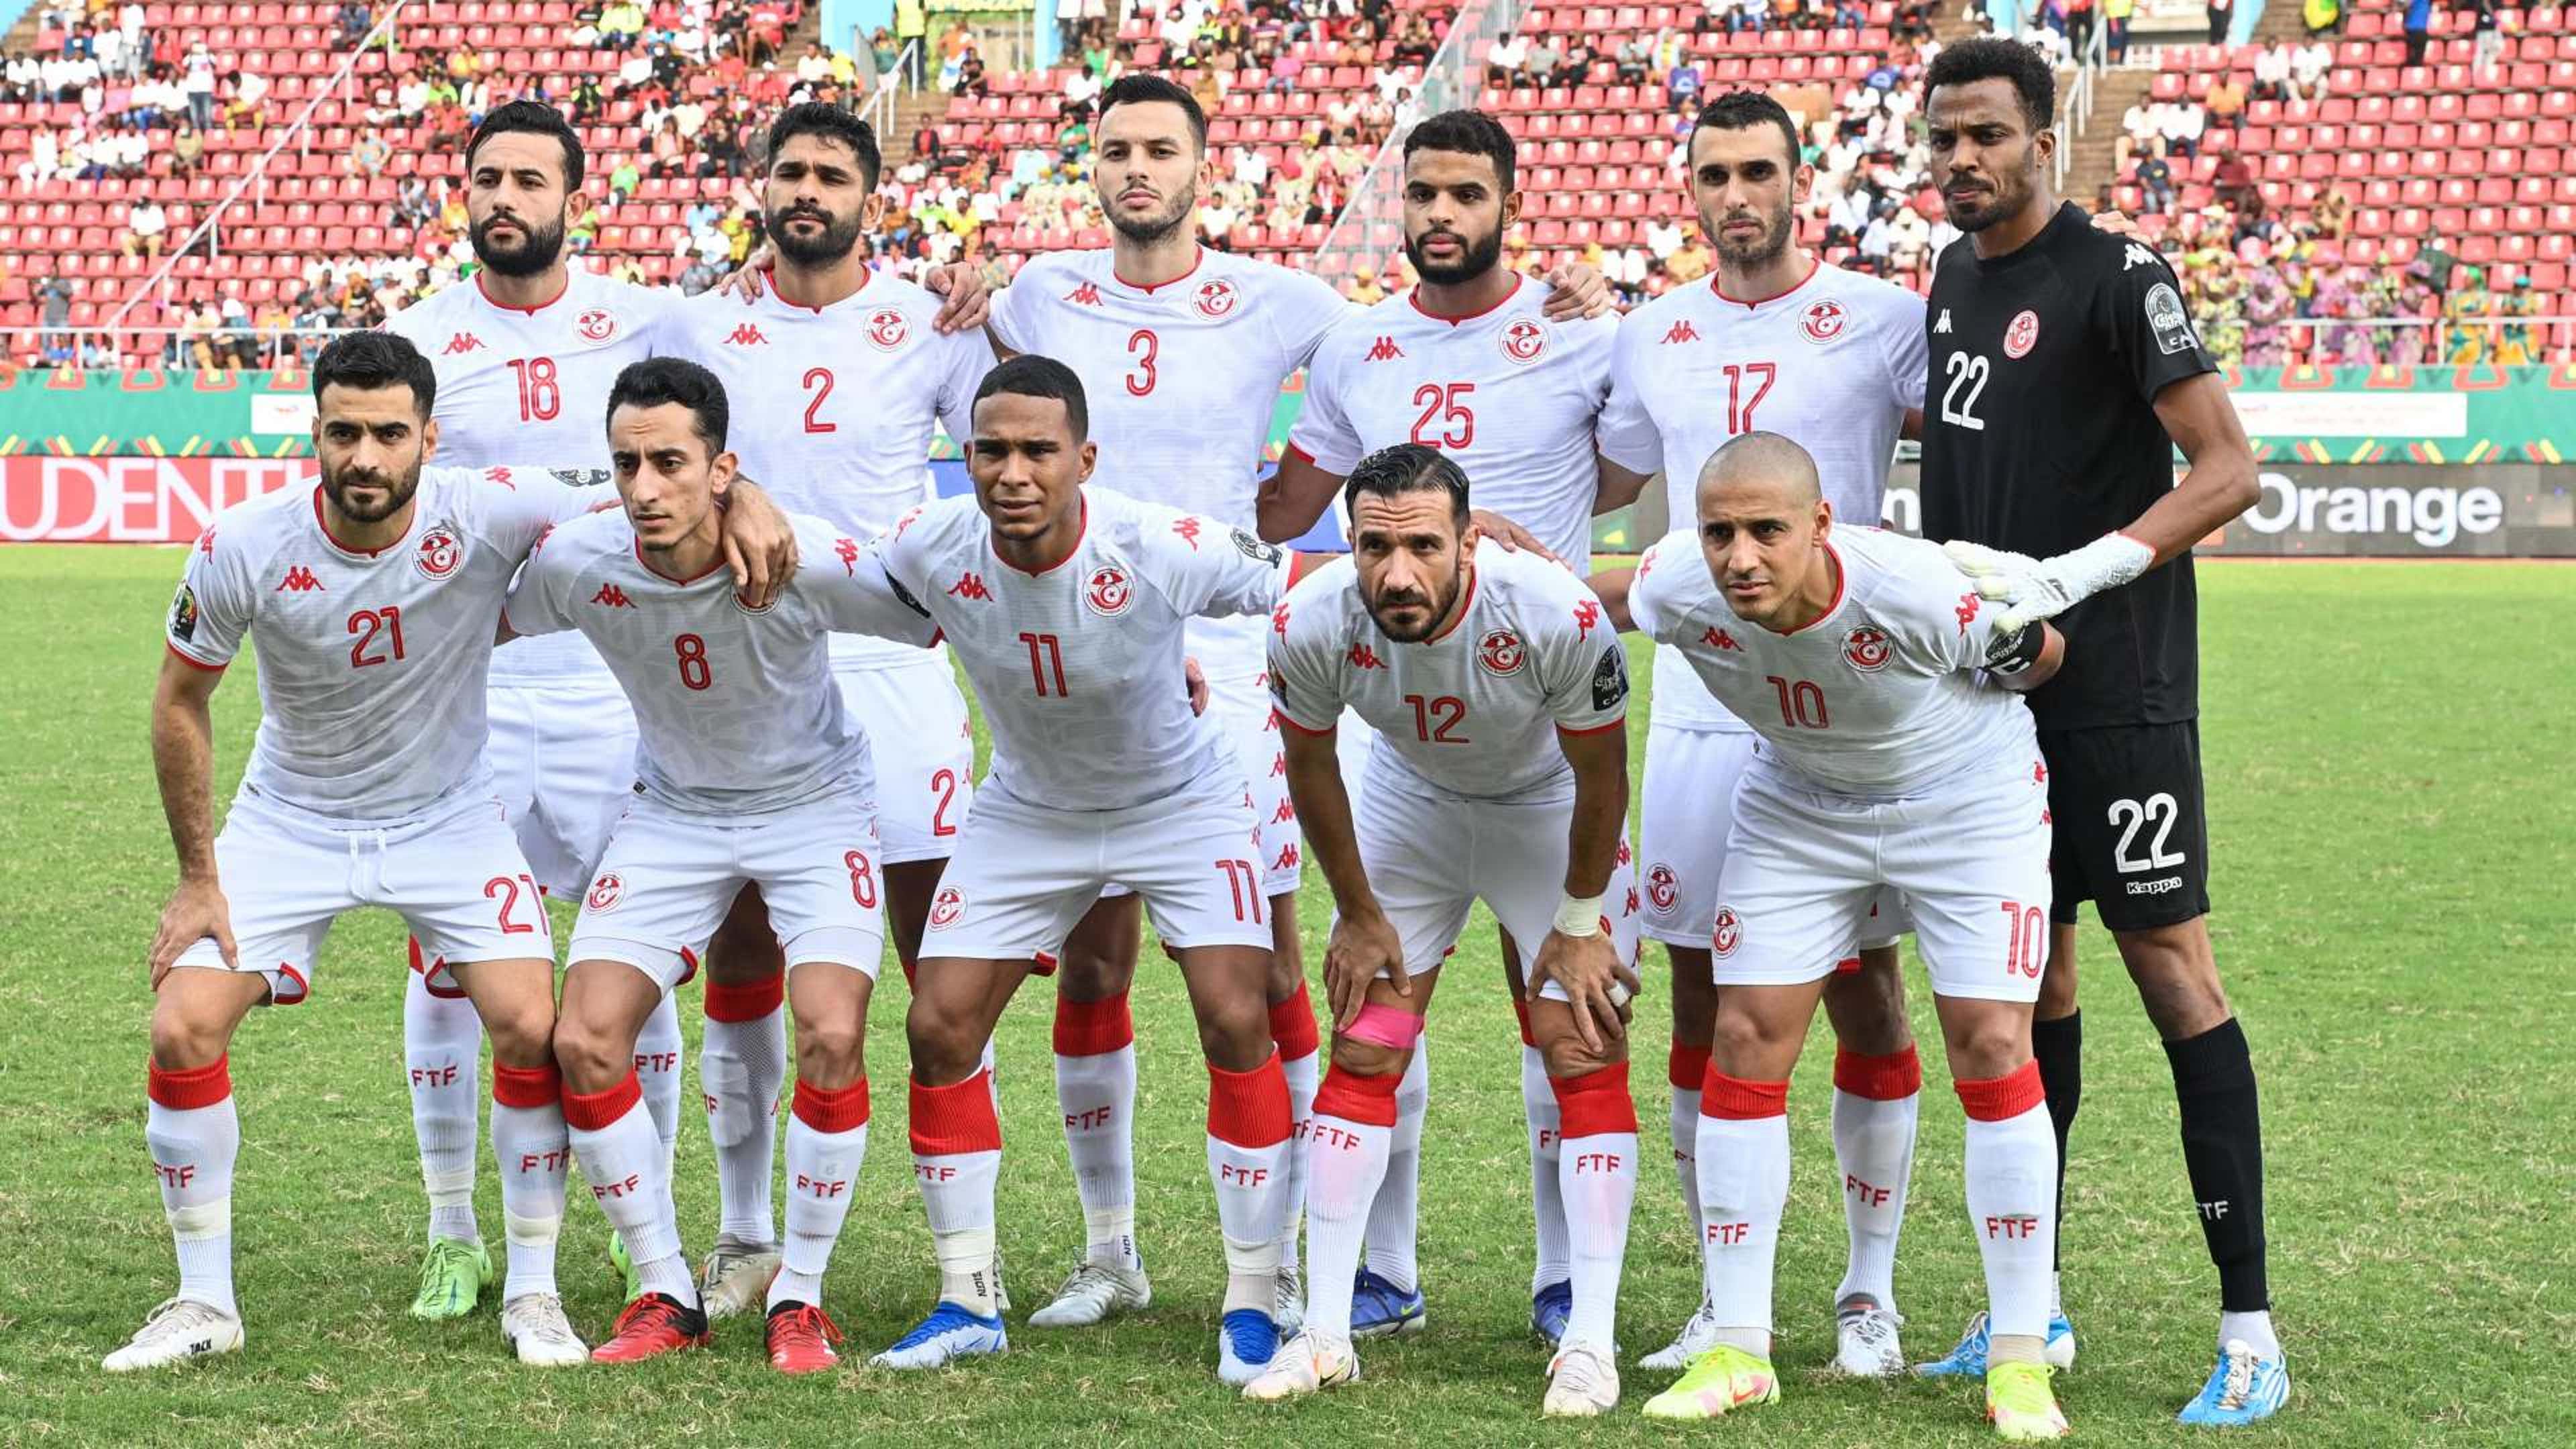 هل يتم استبعاد منتخب تونس من كأس العالم 2022؟ | العربية Goal.com